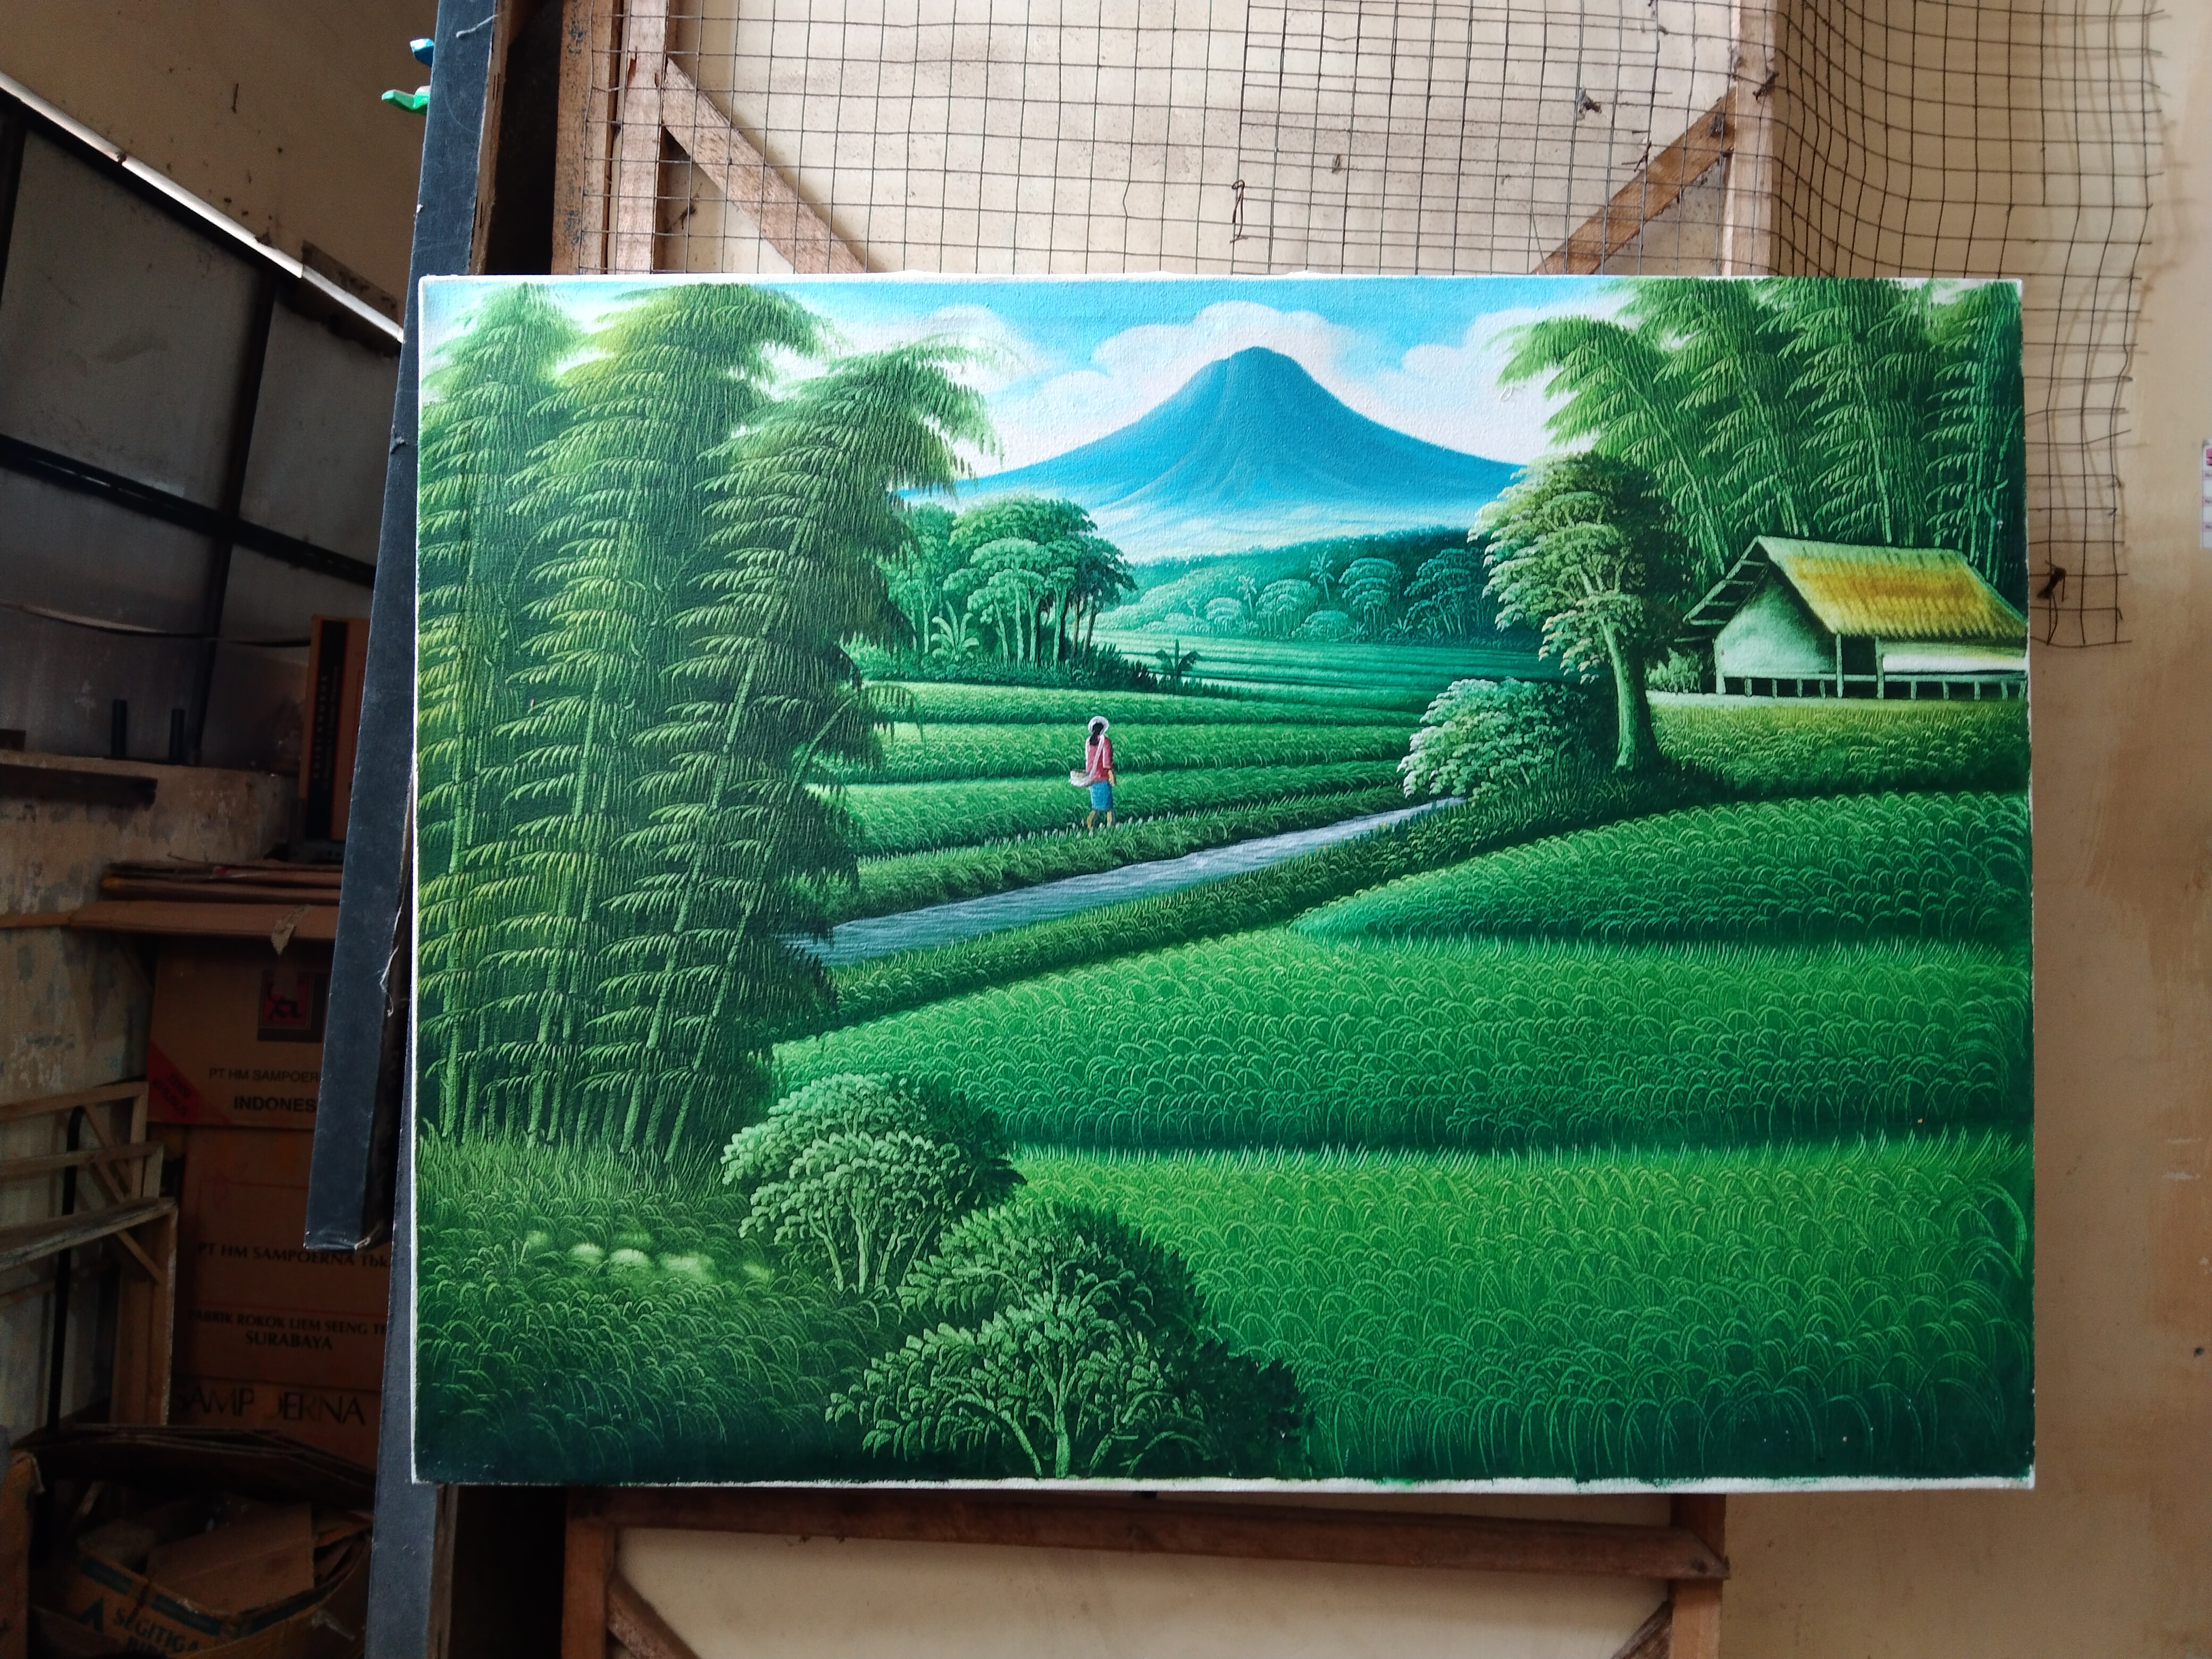 'Lukisan pemandangan gunung agung ukuran 70 x 50 cm'